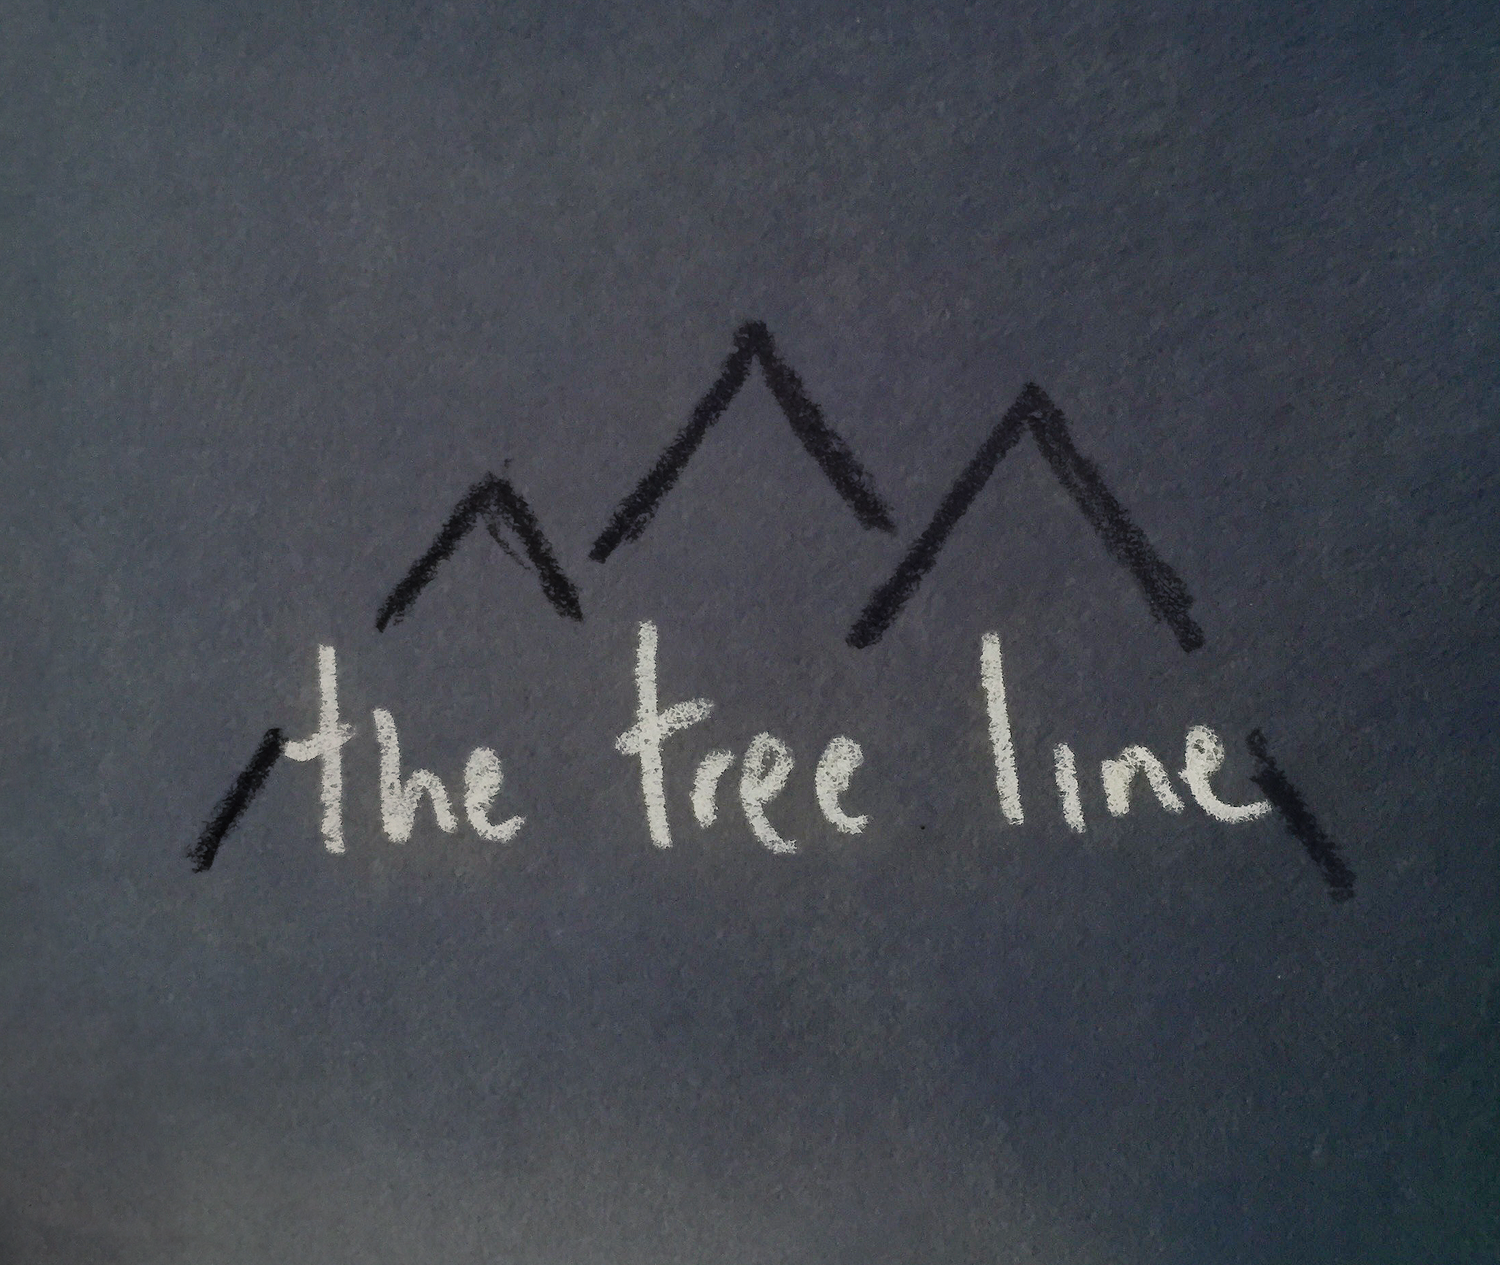 the tree line